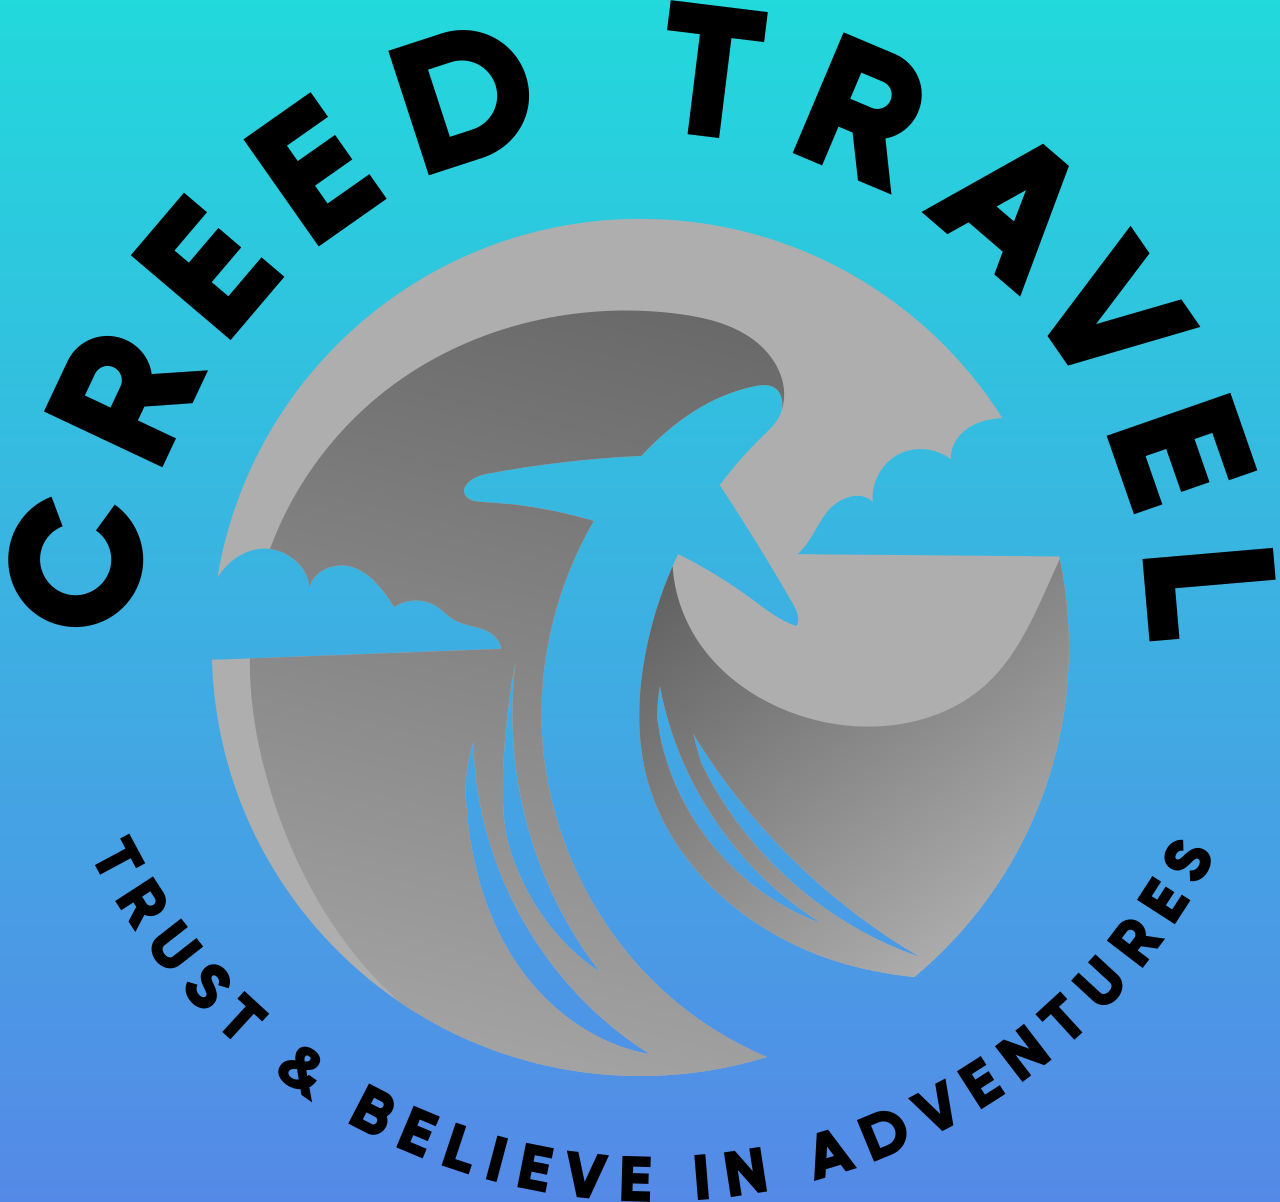 Creed Travel's logo